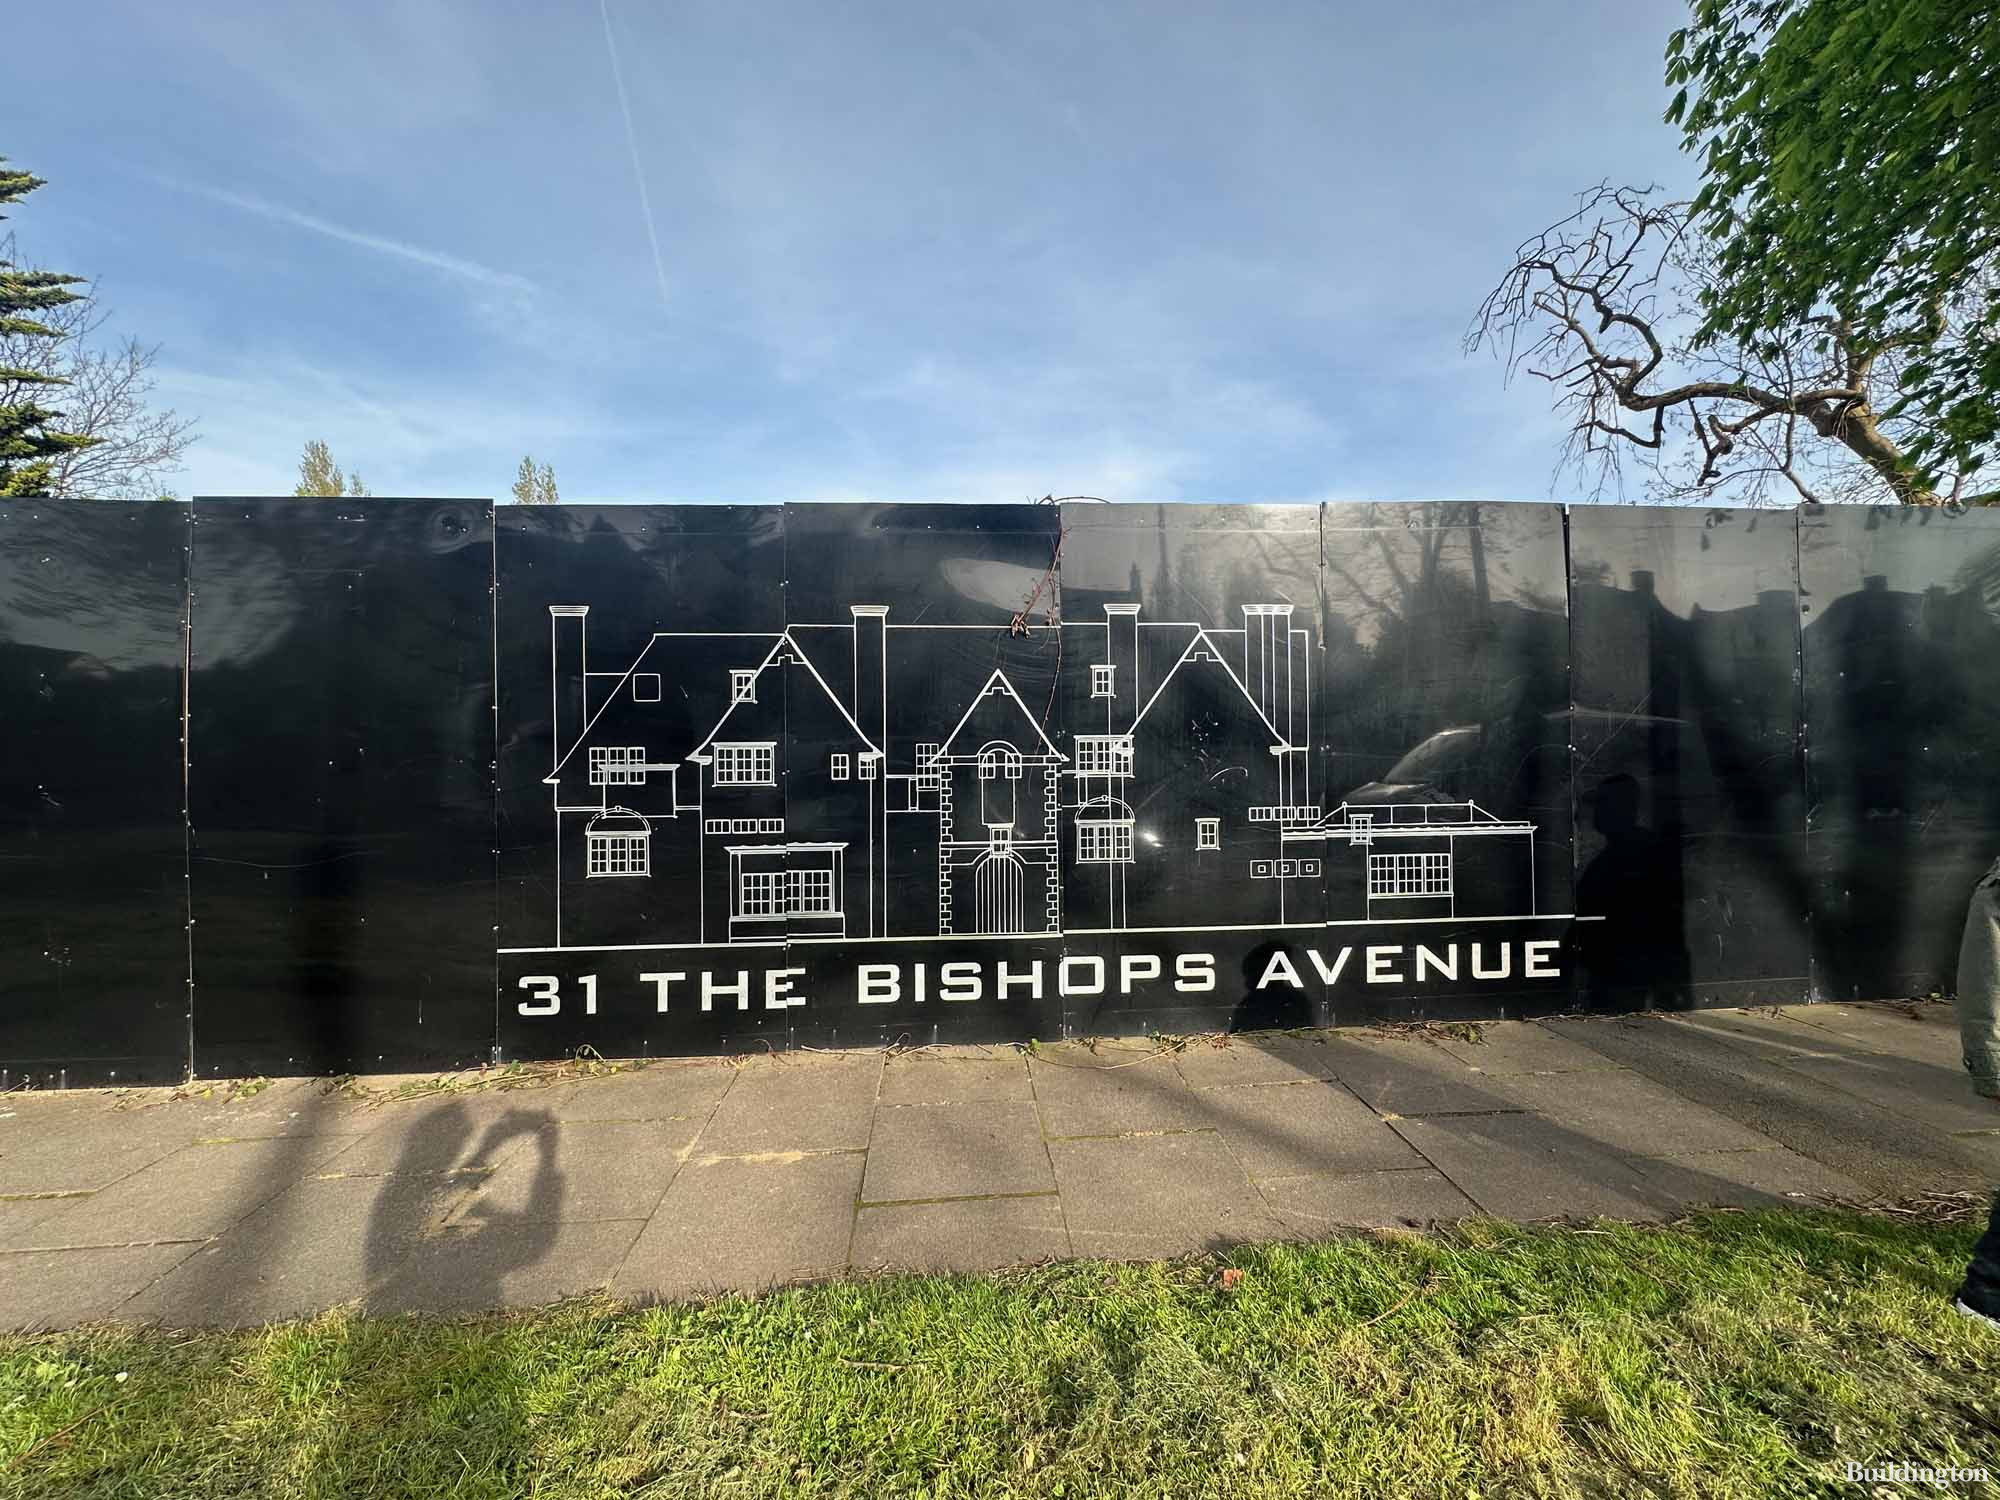 31 The Bishops Avenue in Hampstead, London N2